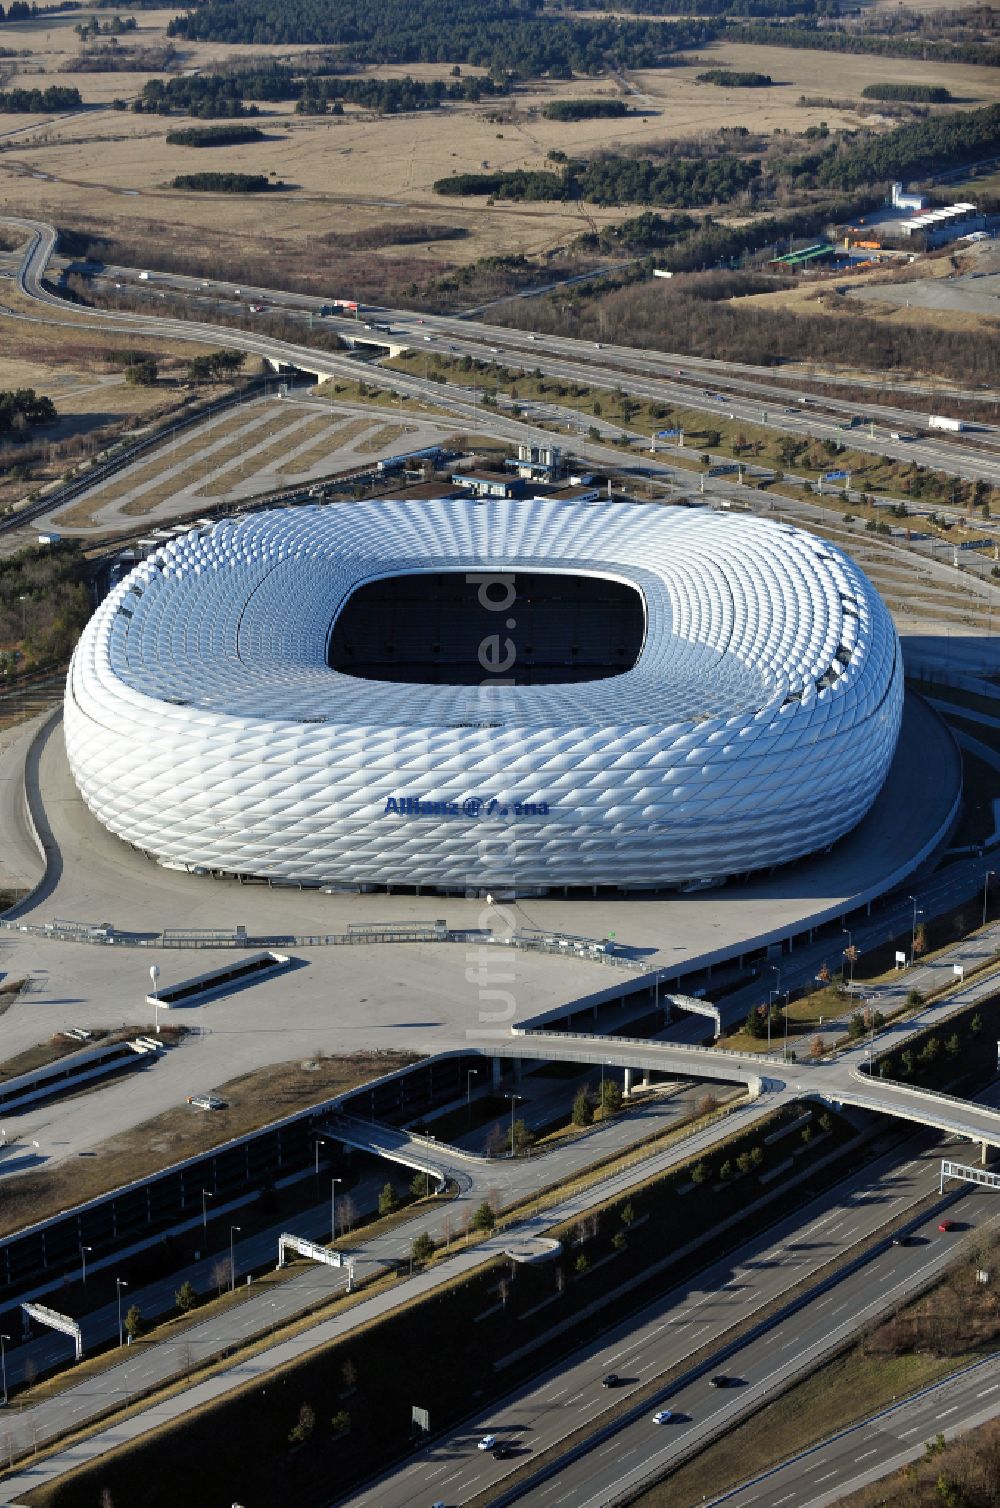 Luftbild München - Sportstätten-Gelände der Arena des Stadion Allianz Arena in München im Bundesland Bayern, Deutschland